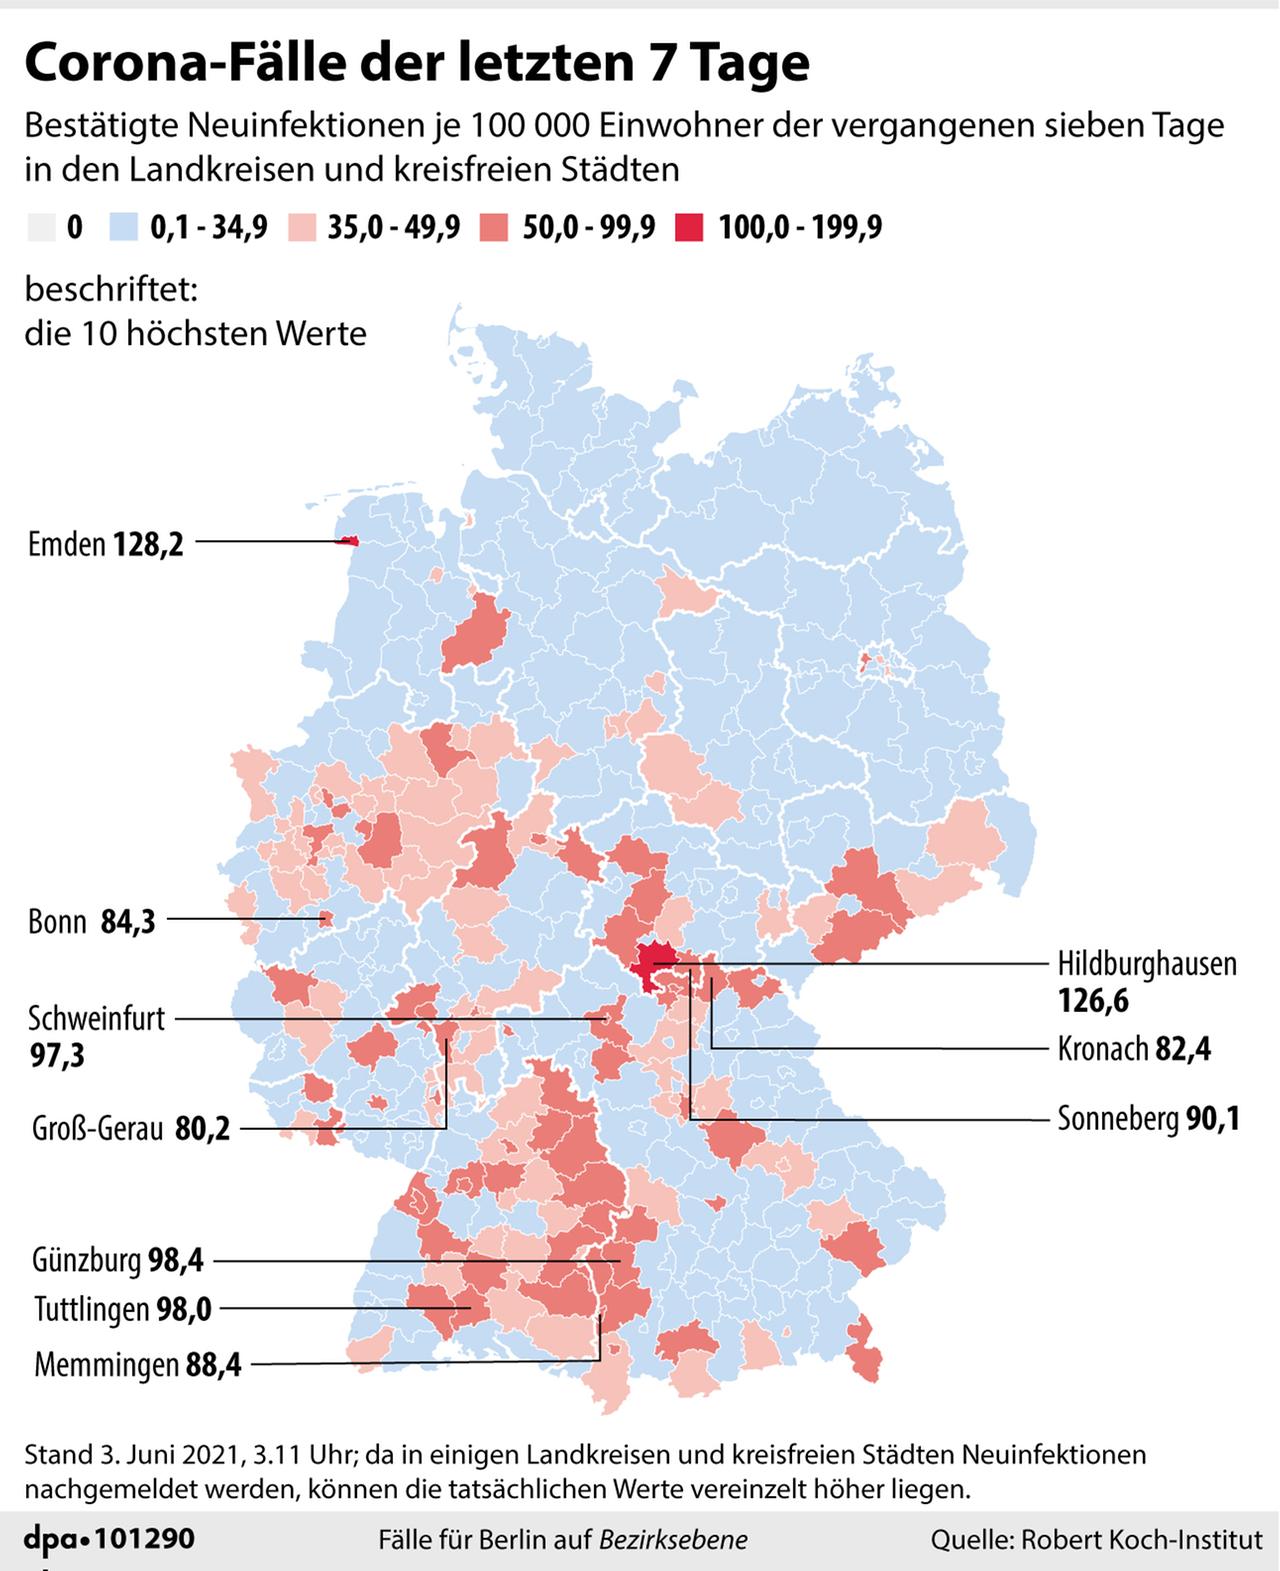 Die Grafik zeigt die Corona-Fälle der letzten 7 Tagein Deutschland.